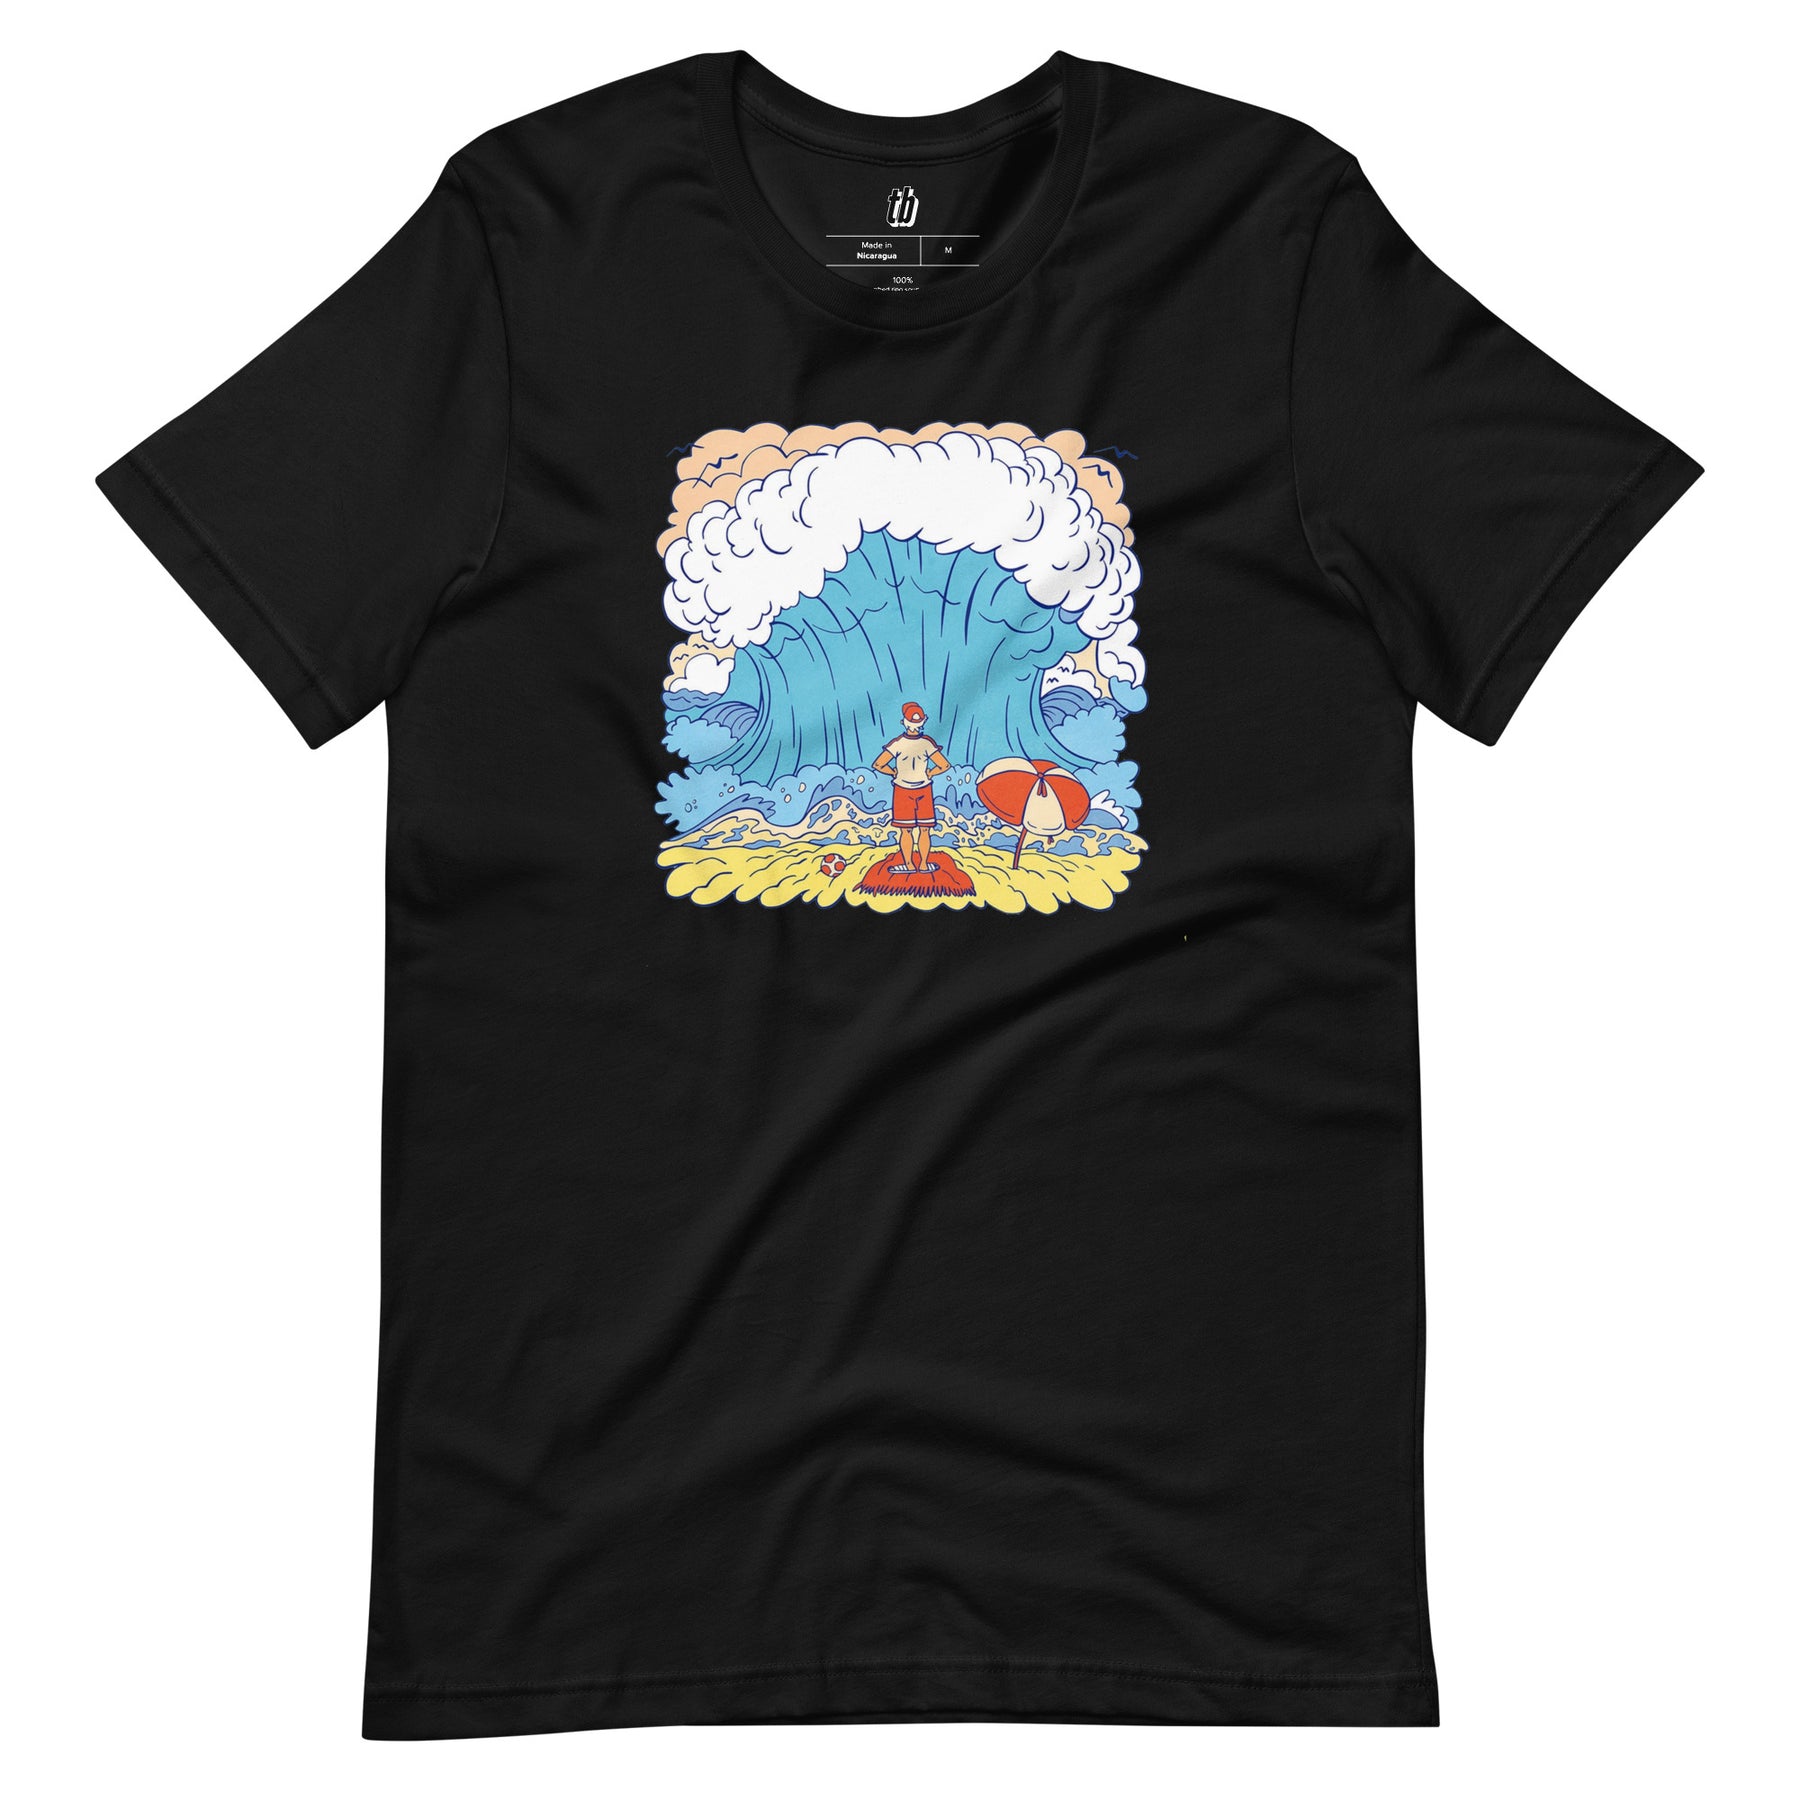 Big Wave T-Shirt - Teebop